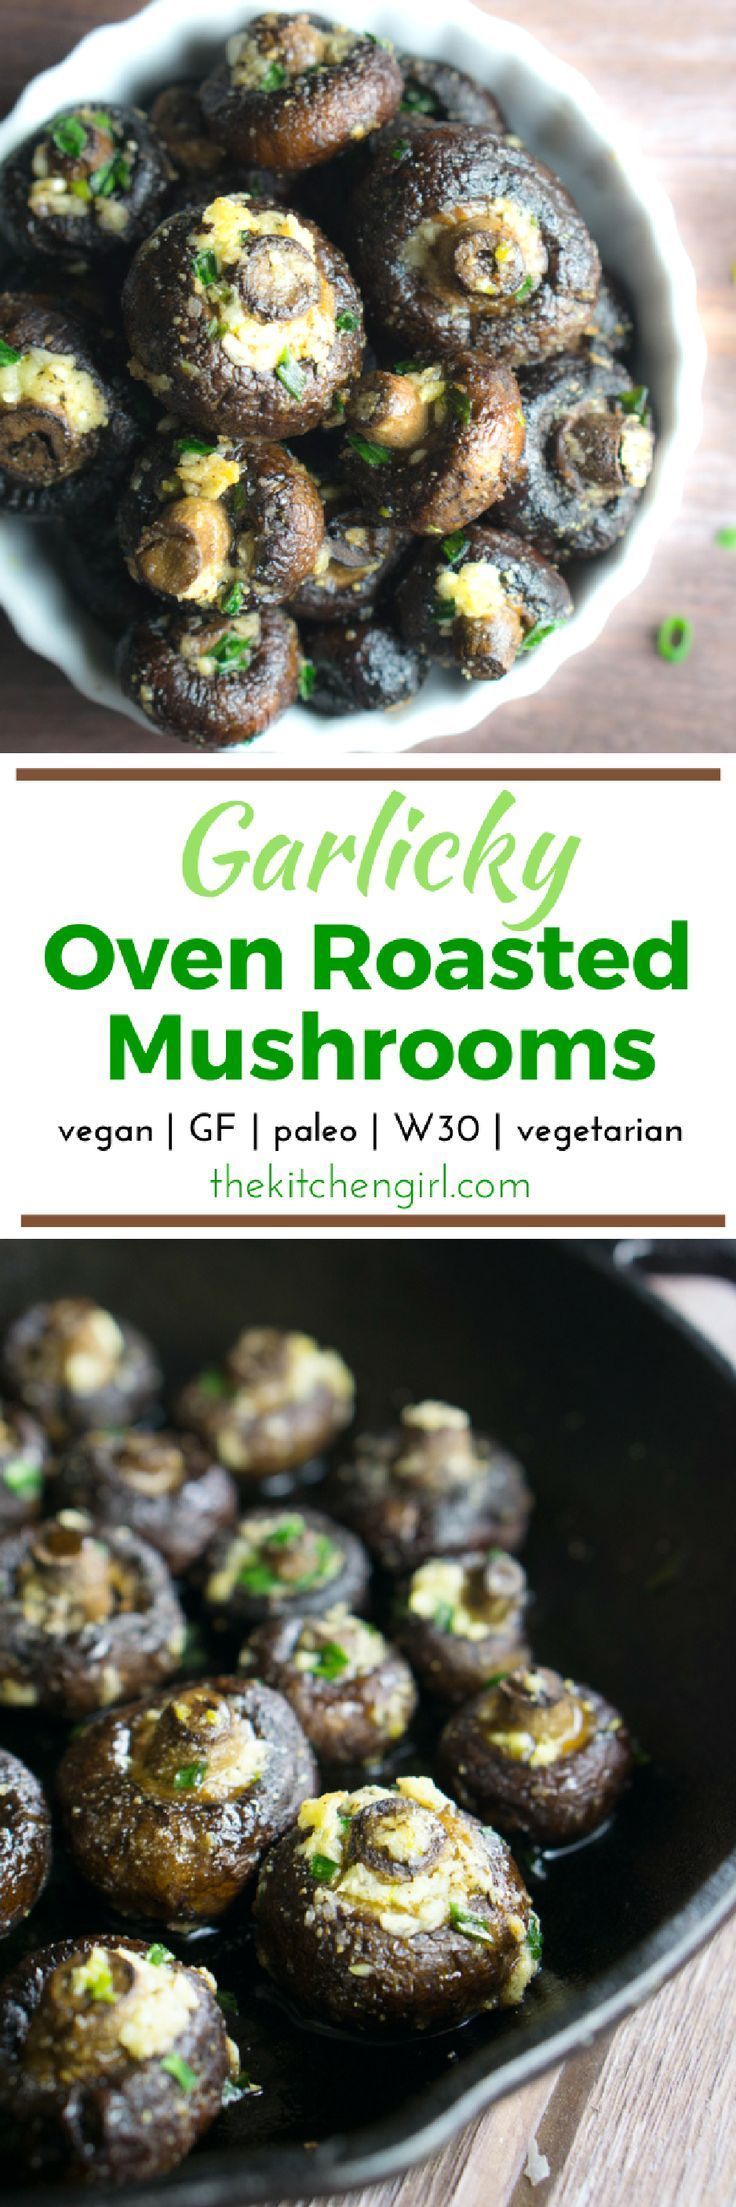 Garlicky Oven Roasted Mushrooms -   20 baked mushroom recipes
 ideas